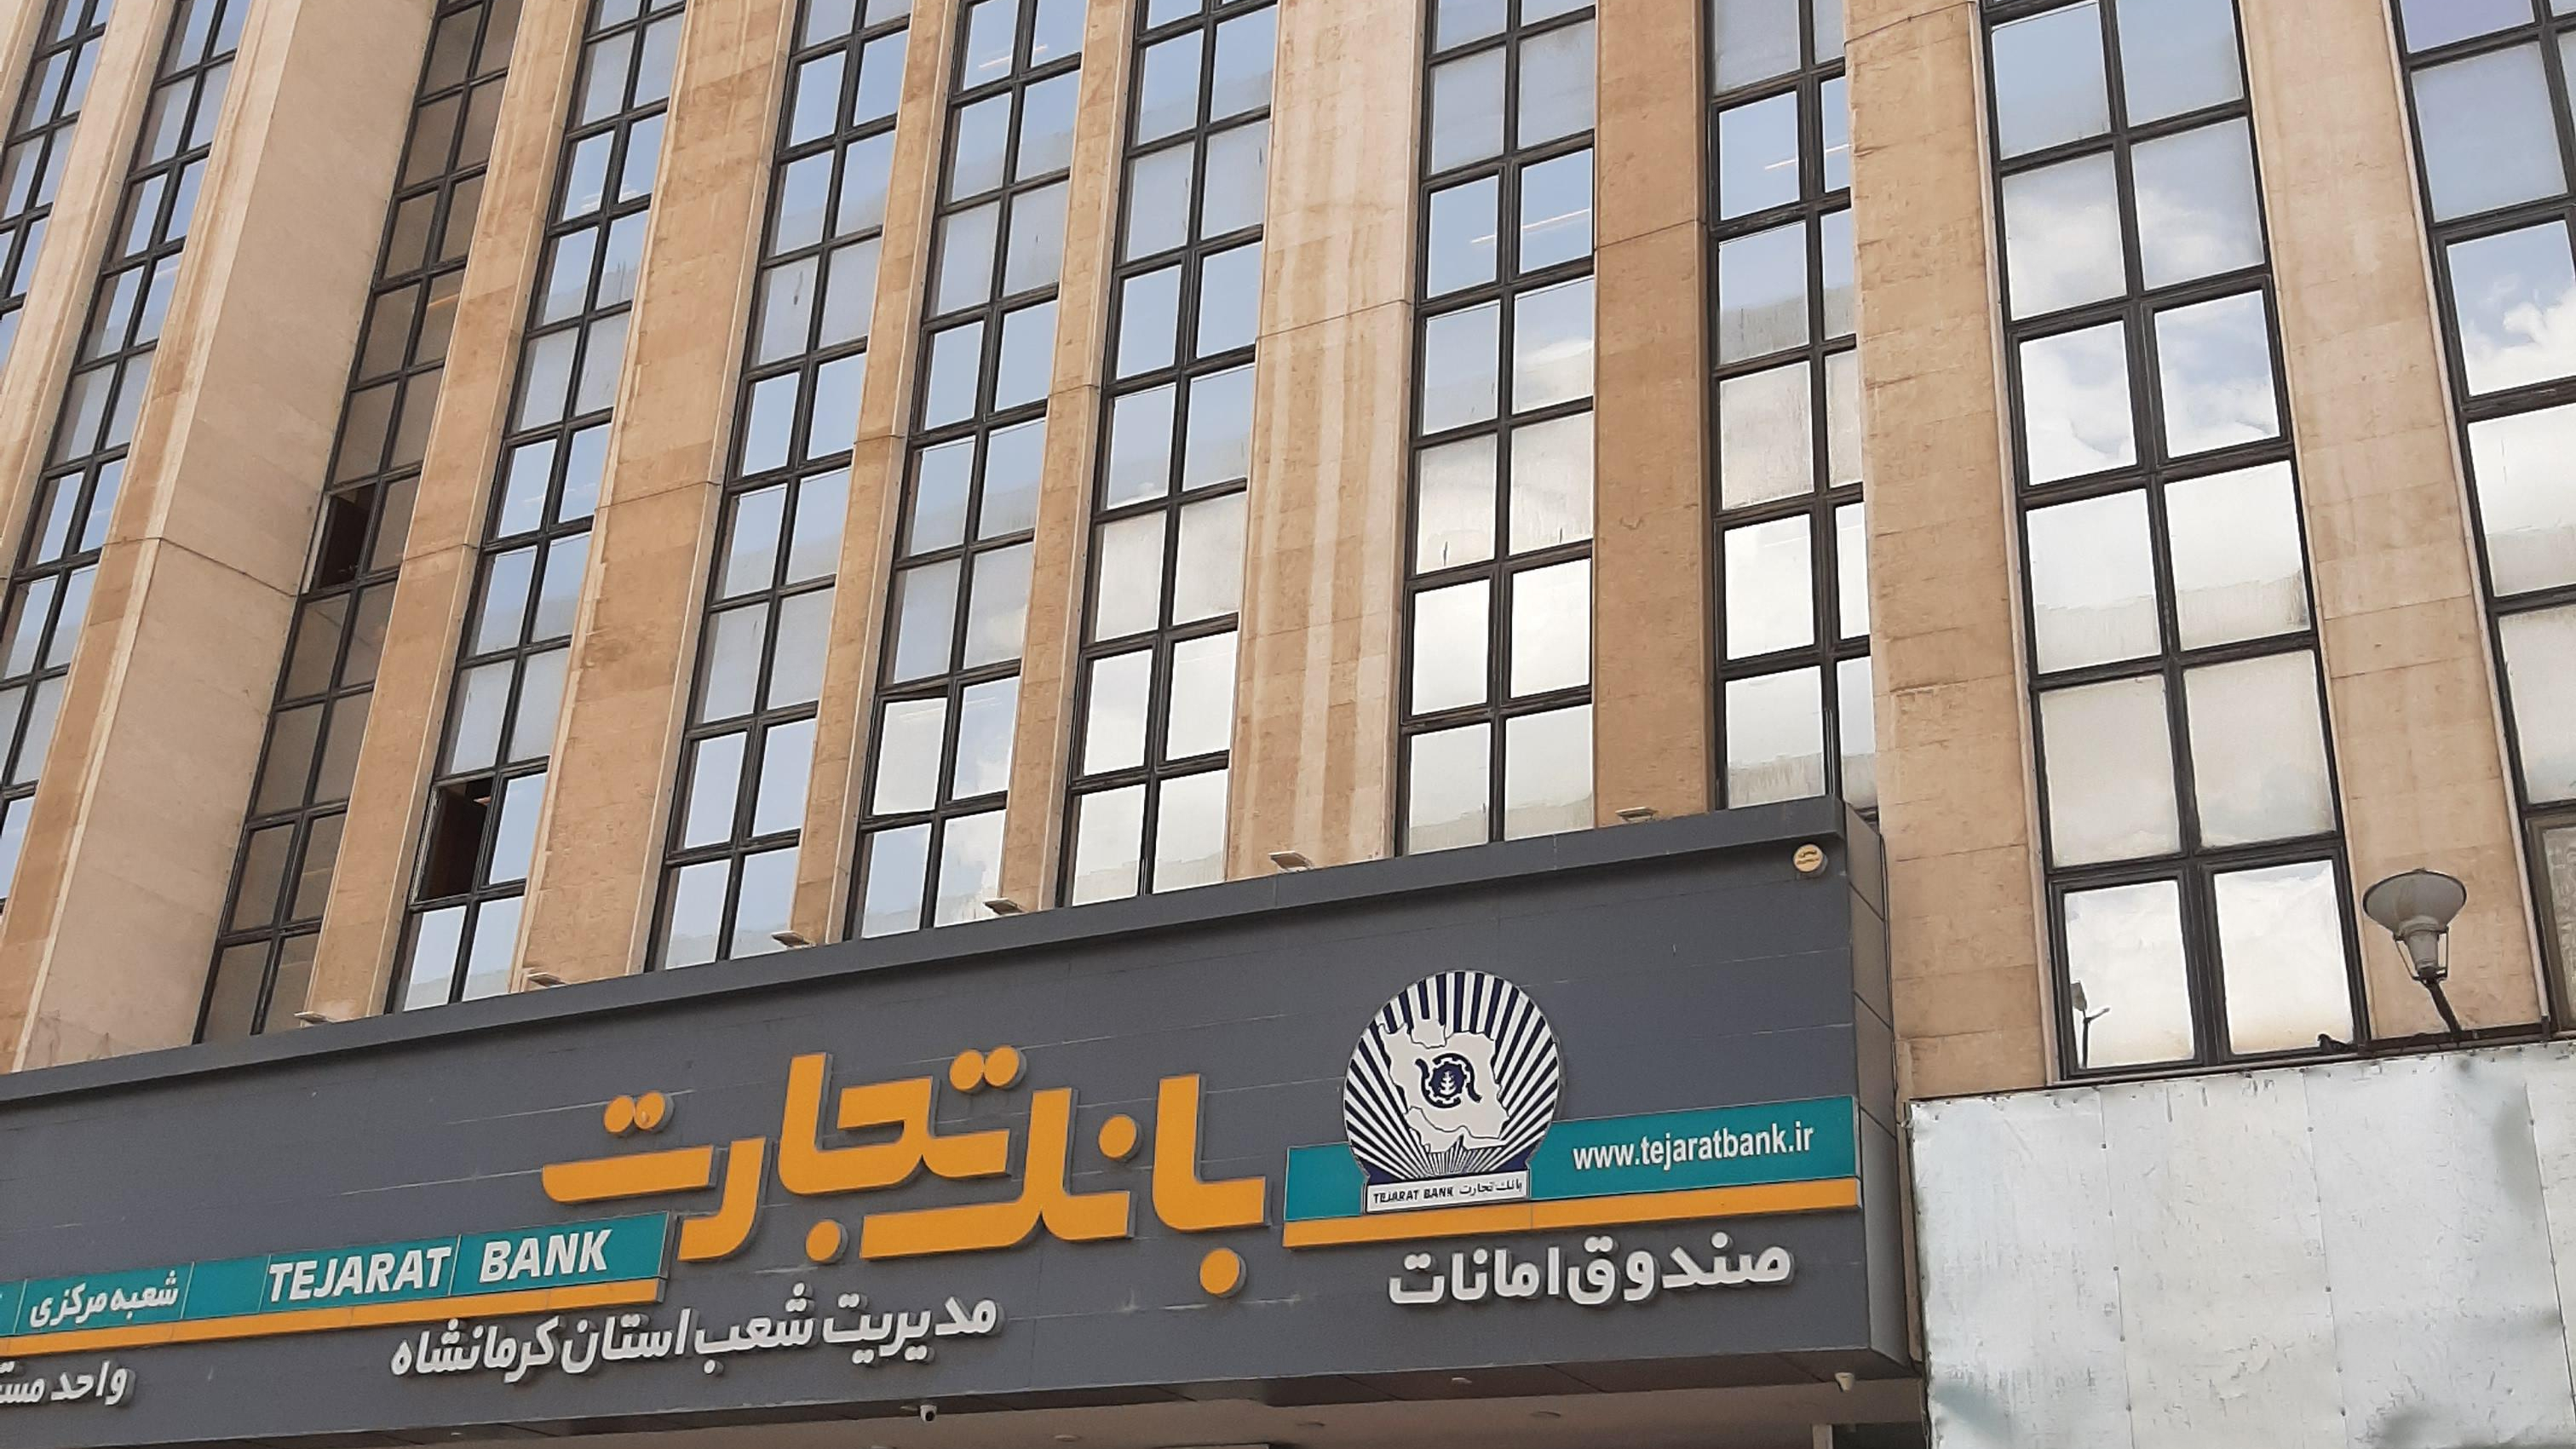 مدیریت بانک تجارت استان کرمانشاه